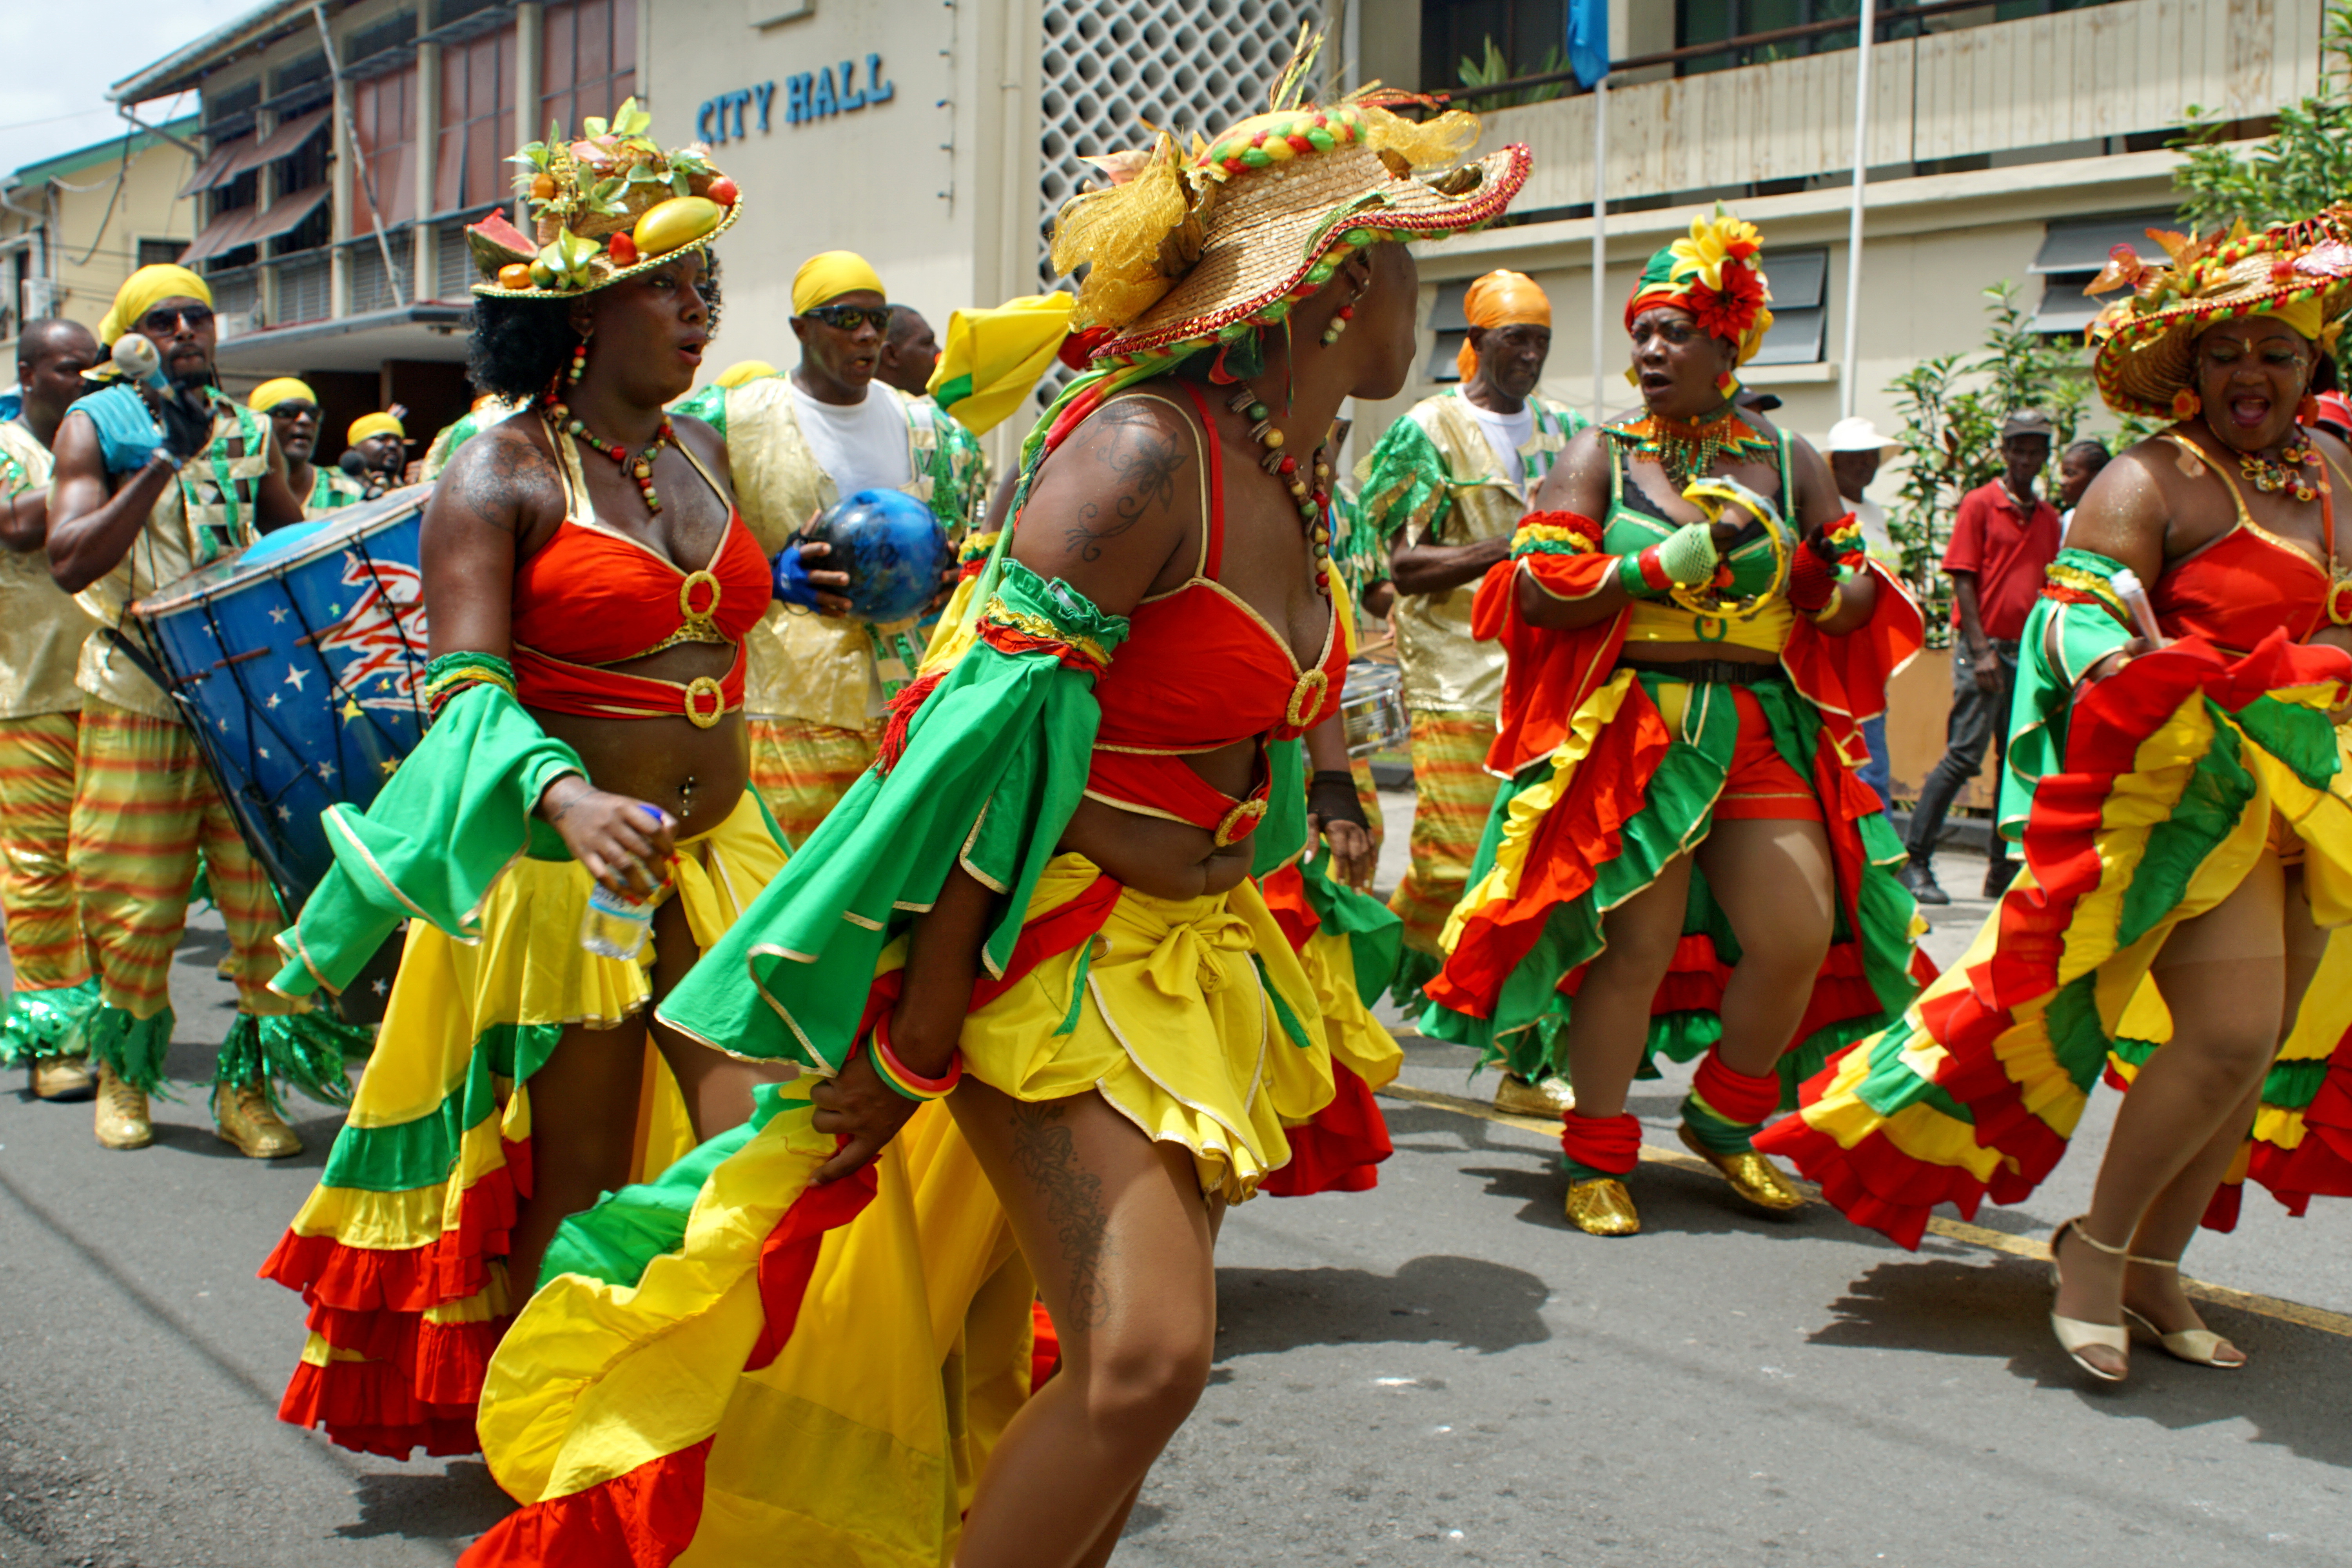     Sainte-Lucie prépare un carnaval réservé aux personnes vaccinées

